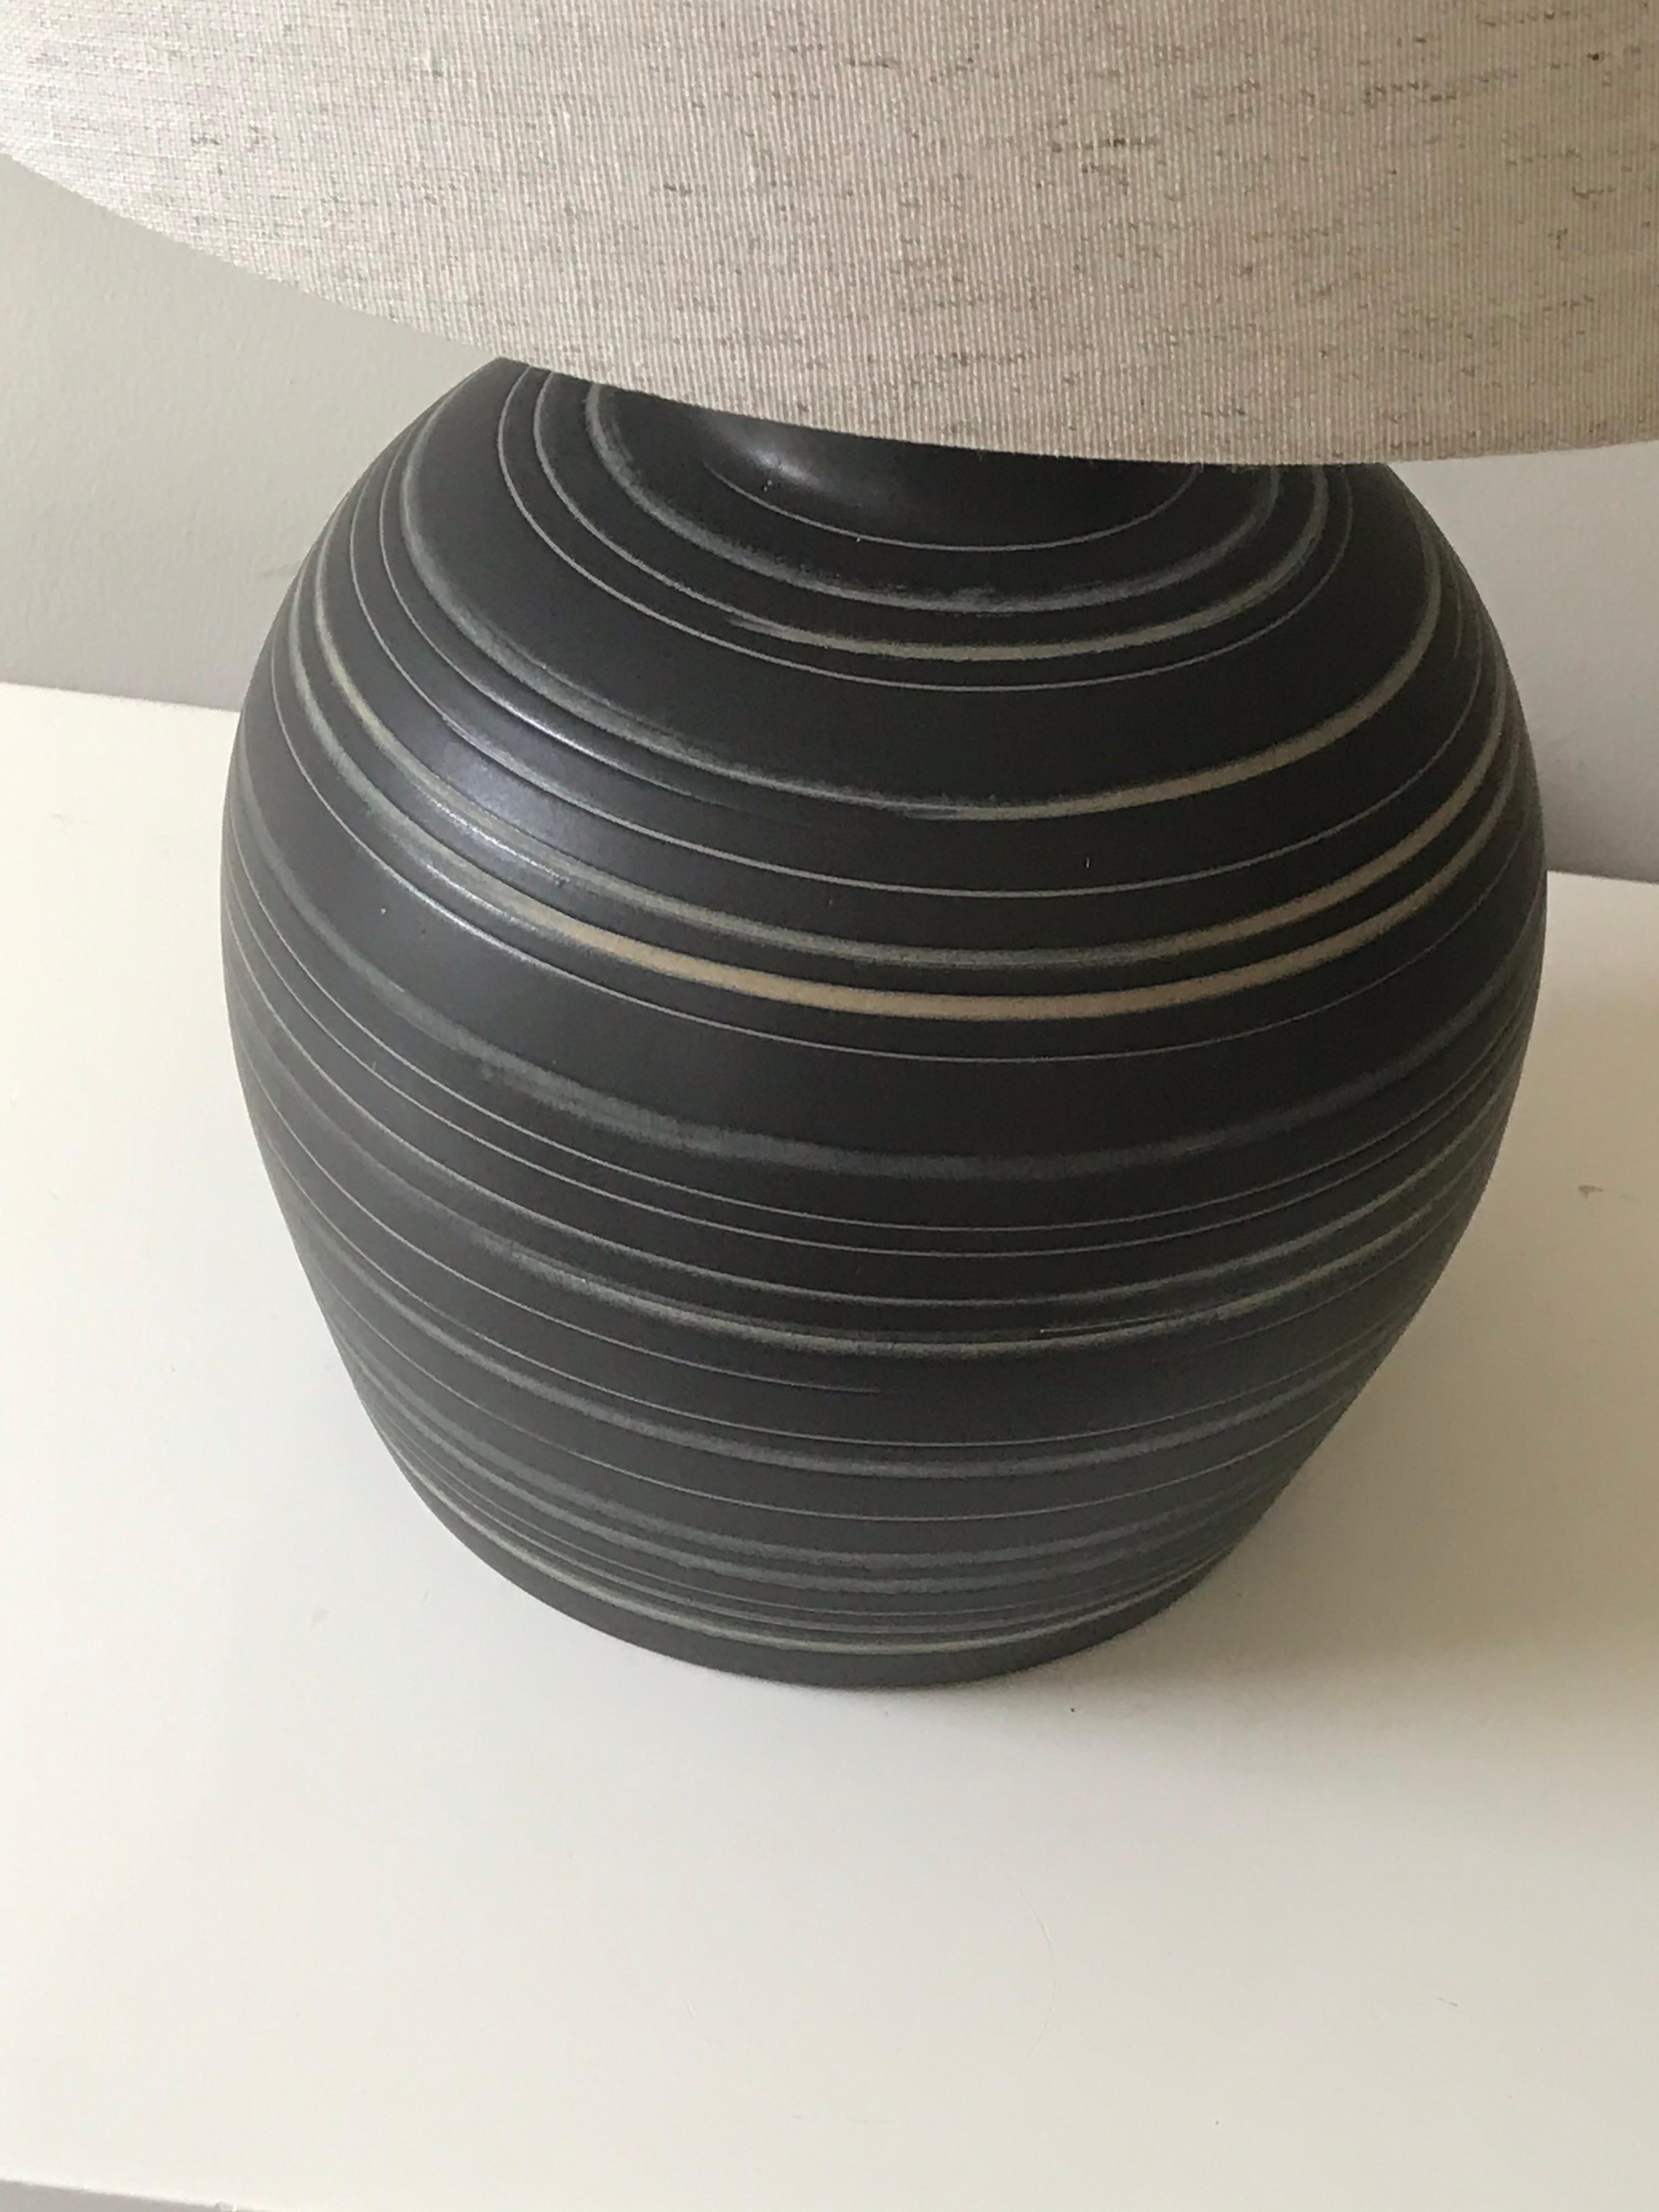 Elegante Lampe des Keramikerduos Jane und Gordon Martz für Marshall Studios. Die Rückseite ist schwarz/dunkelgrau mit cremefarbenen und hellblauen Mustern. Neuere Verkabelung und neue Beschattung.

Gesamt- 
23,5